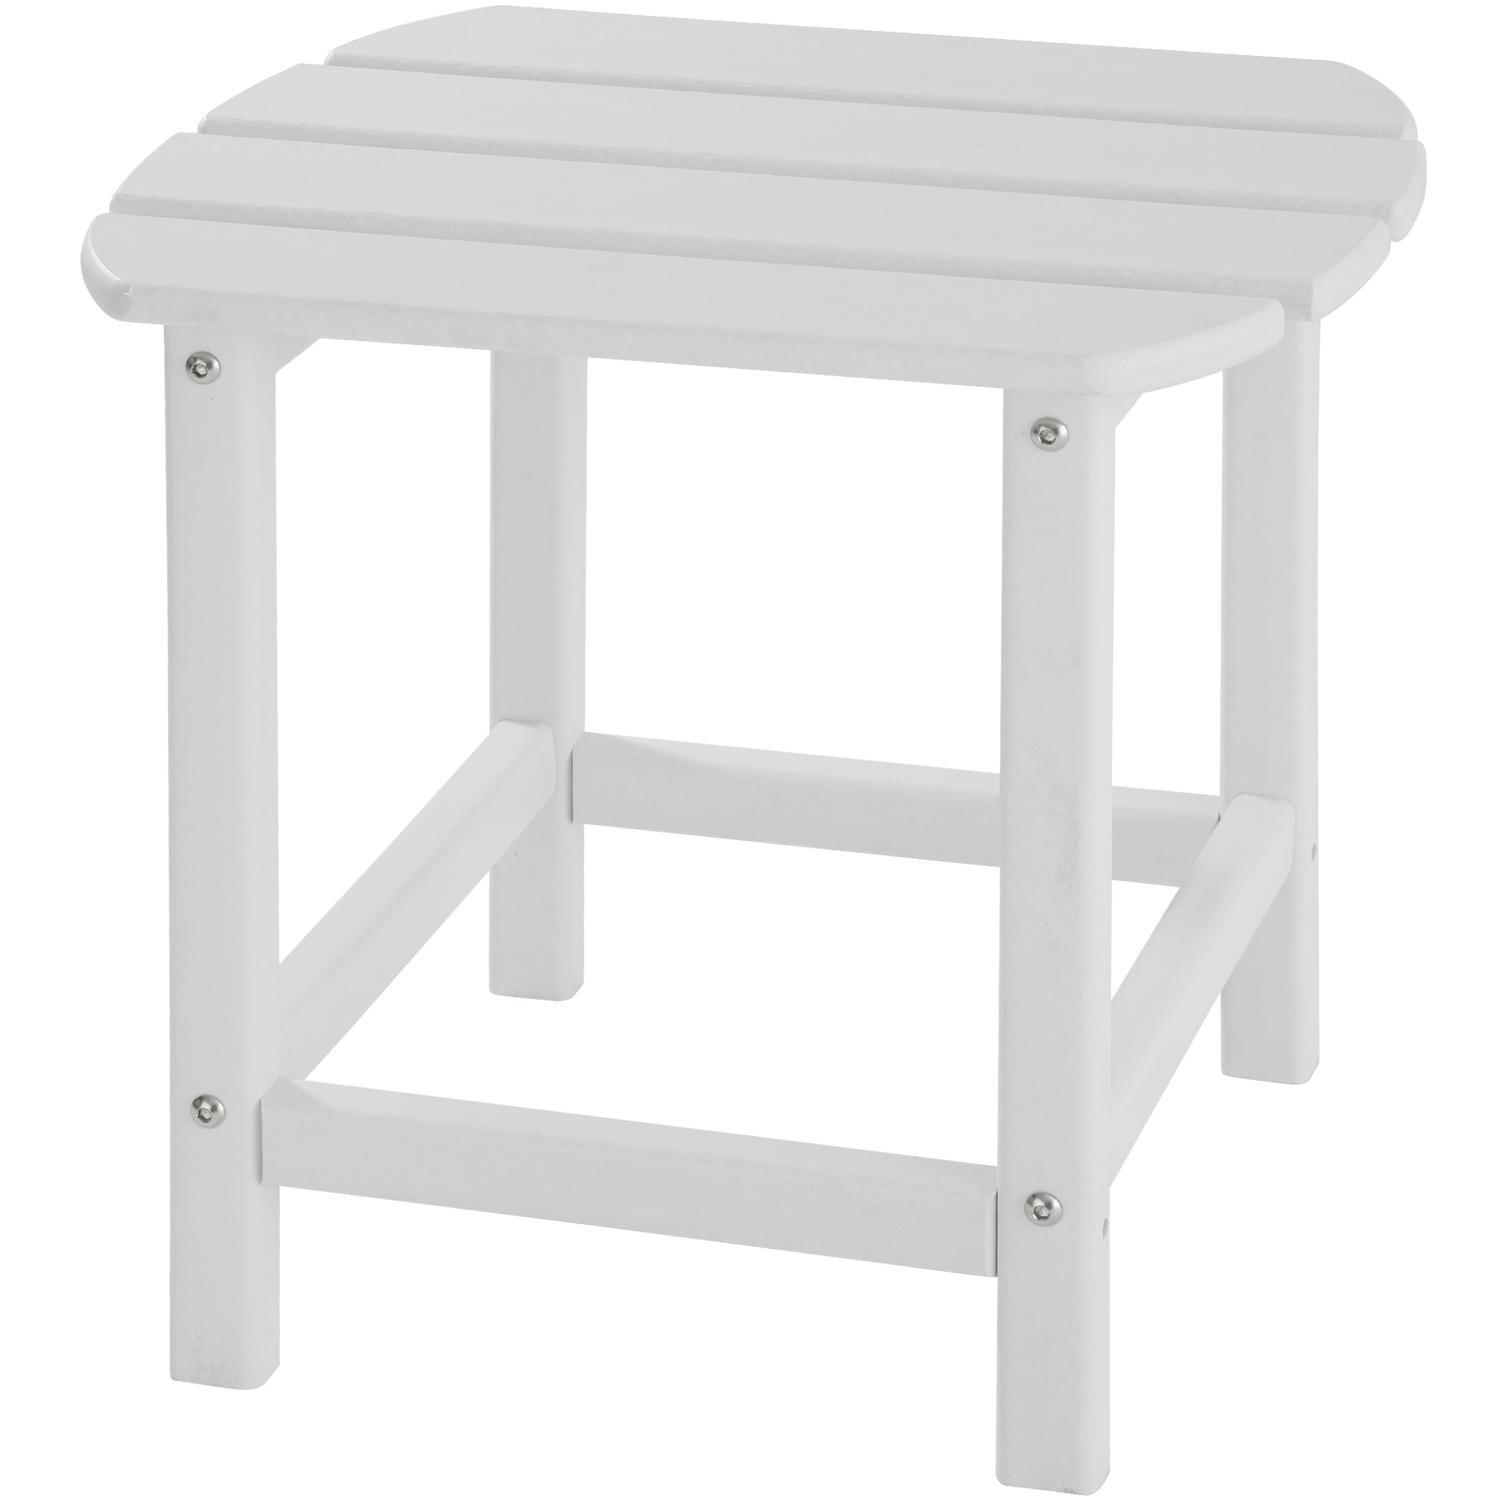 Sidebord hagemøbel - hvit - Elkjøp